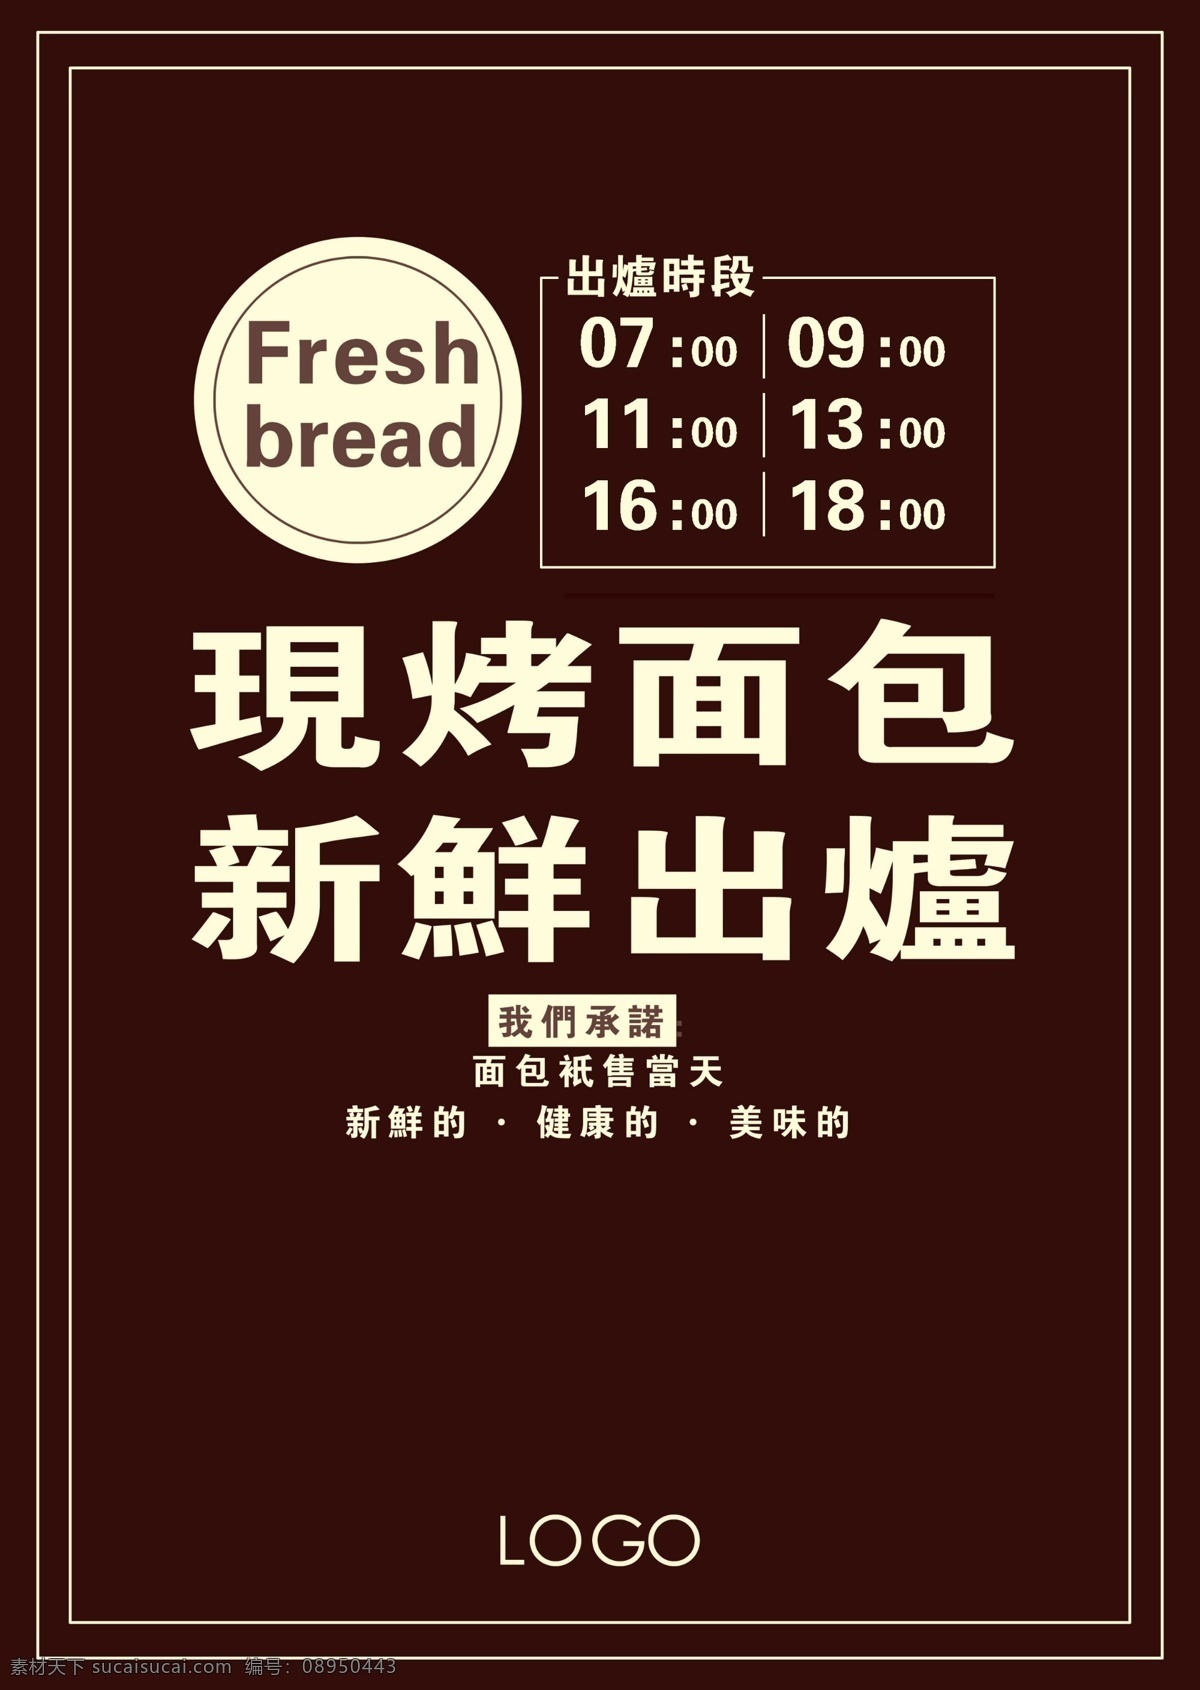 面包店海报 面包海报 面包 海报 现烤面包 新鲜出炉 面包店 广告设计模板 源文件